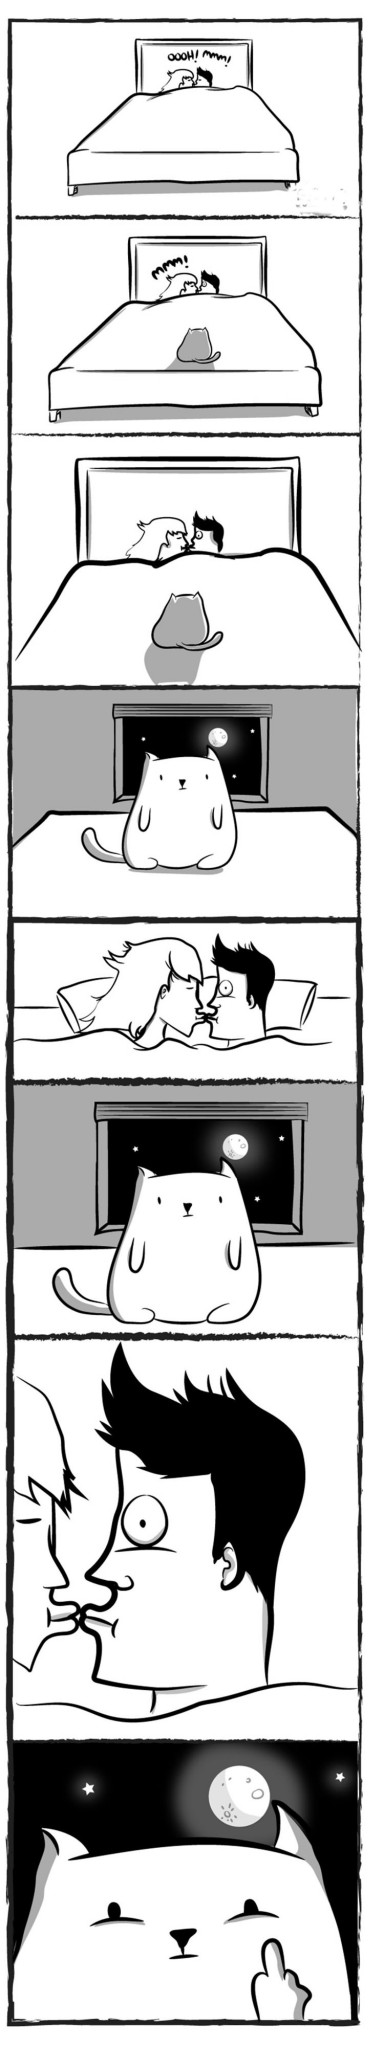 funny-cat-comics-4